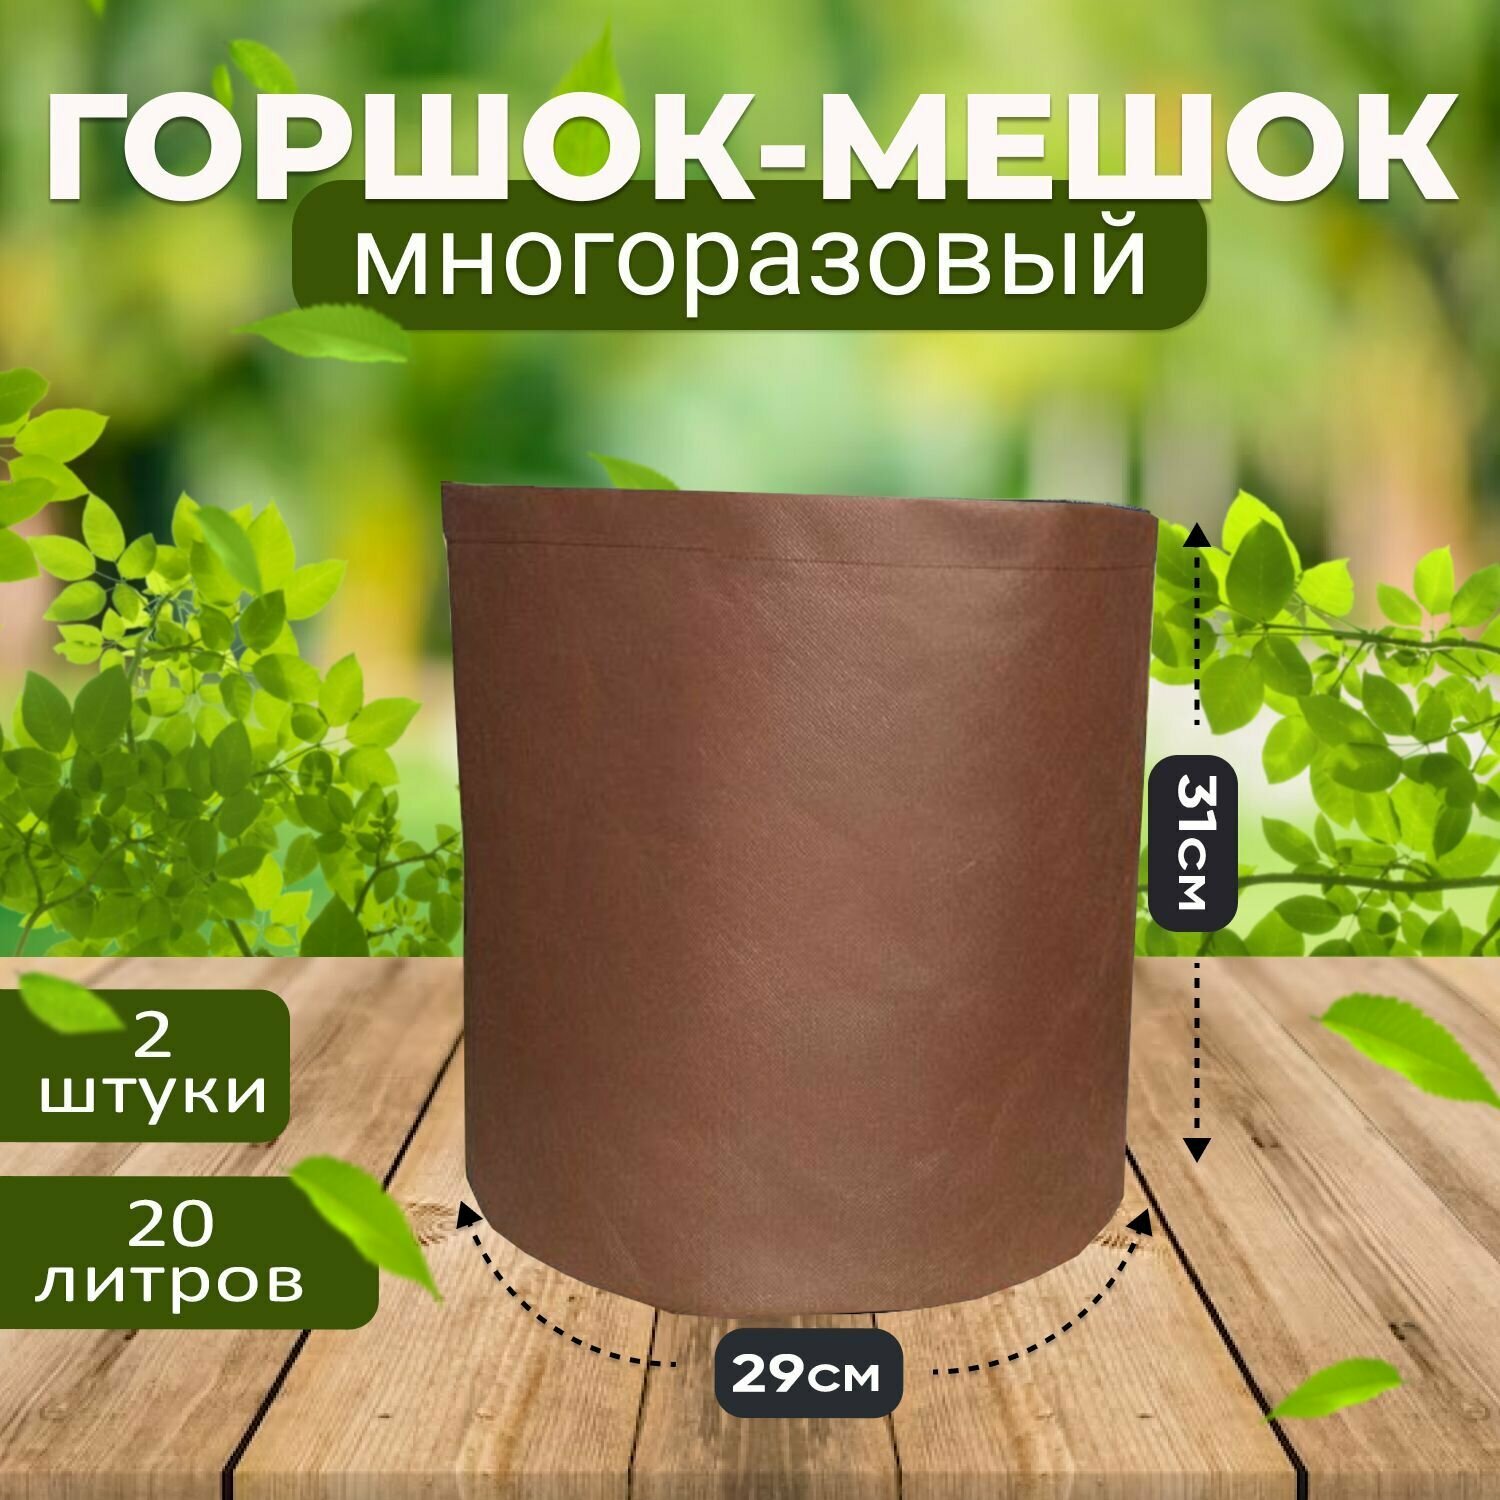 Мешок горшок текстильный из ткани для растений и цветов коричневый 20л, 2шт. (Гроубэг, Grow Bag)